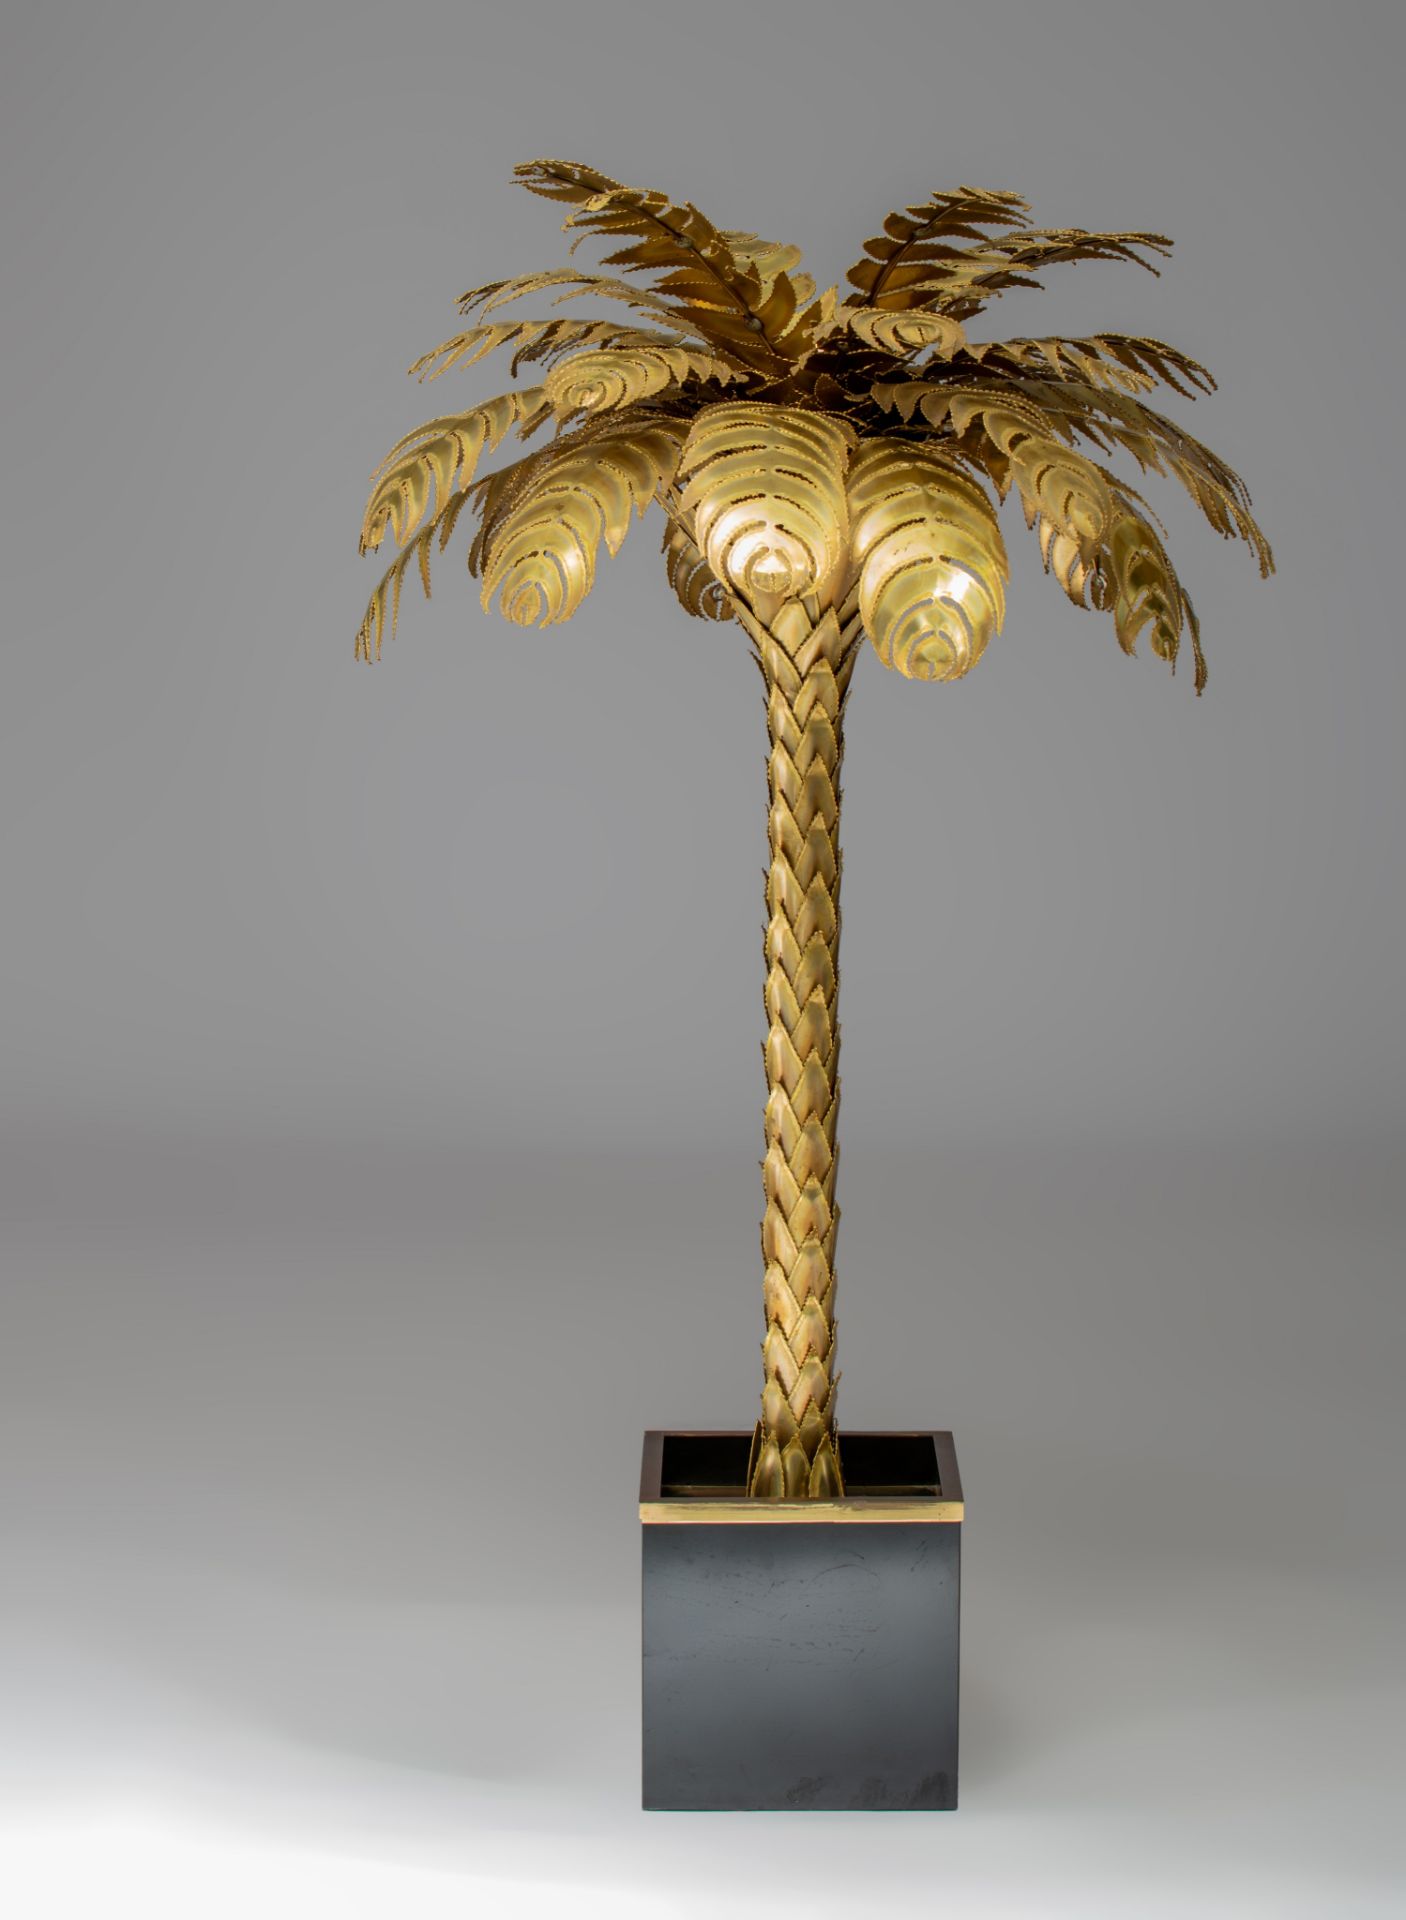 A vintage brass design Palm Tree lamp by Maison Jansen, Paris, H 155 cm - Image 6 of 10